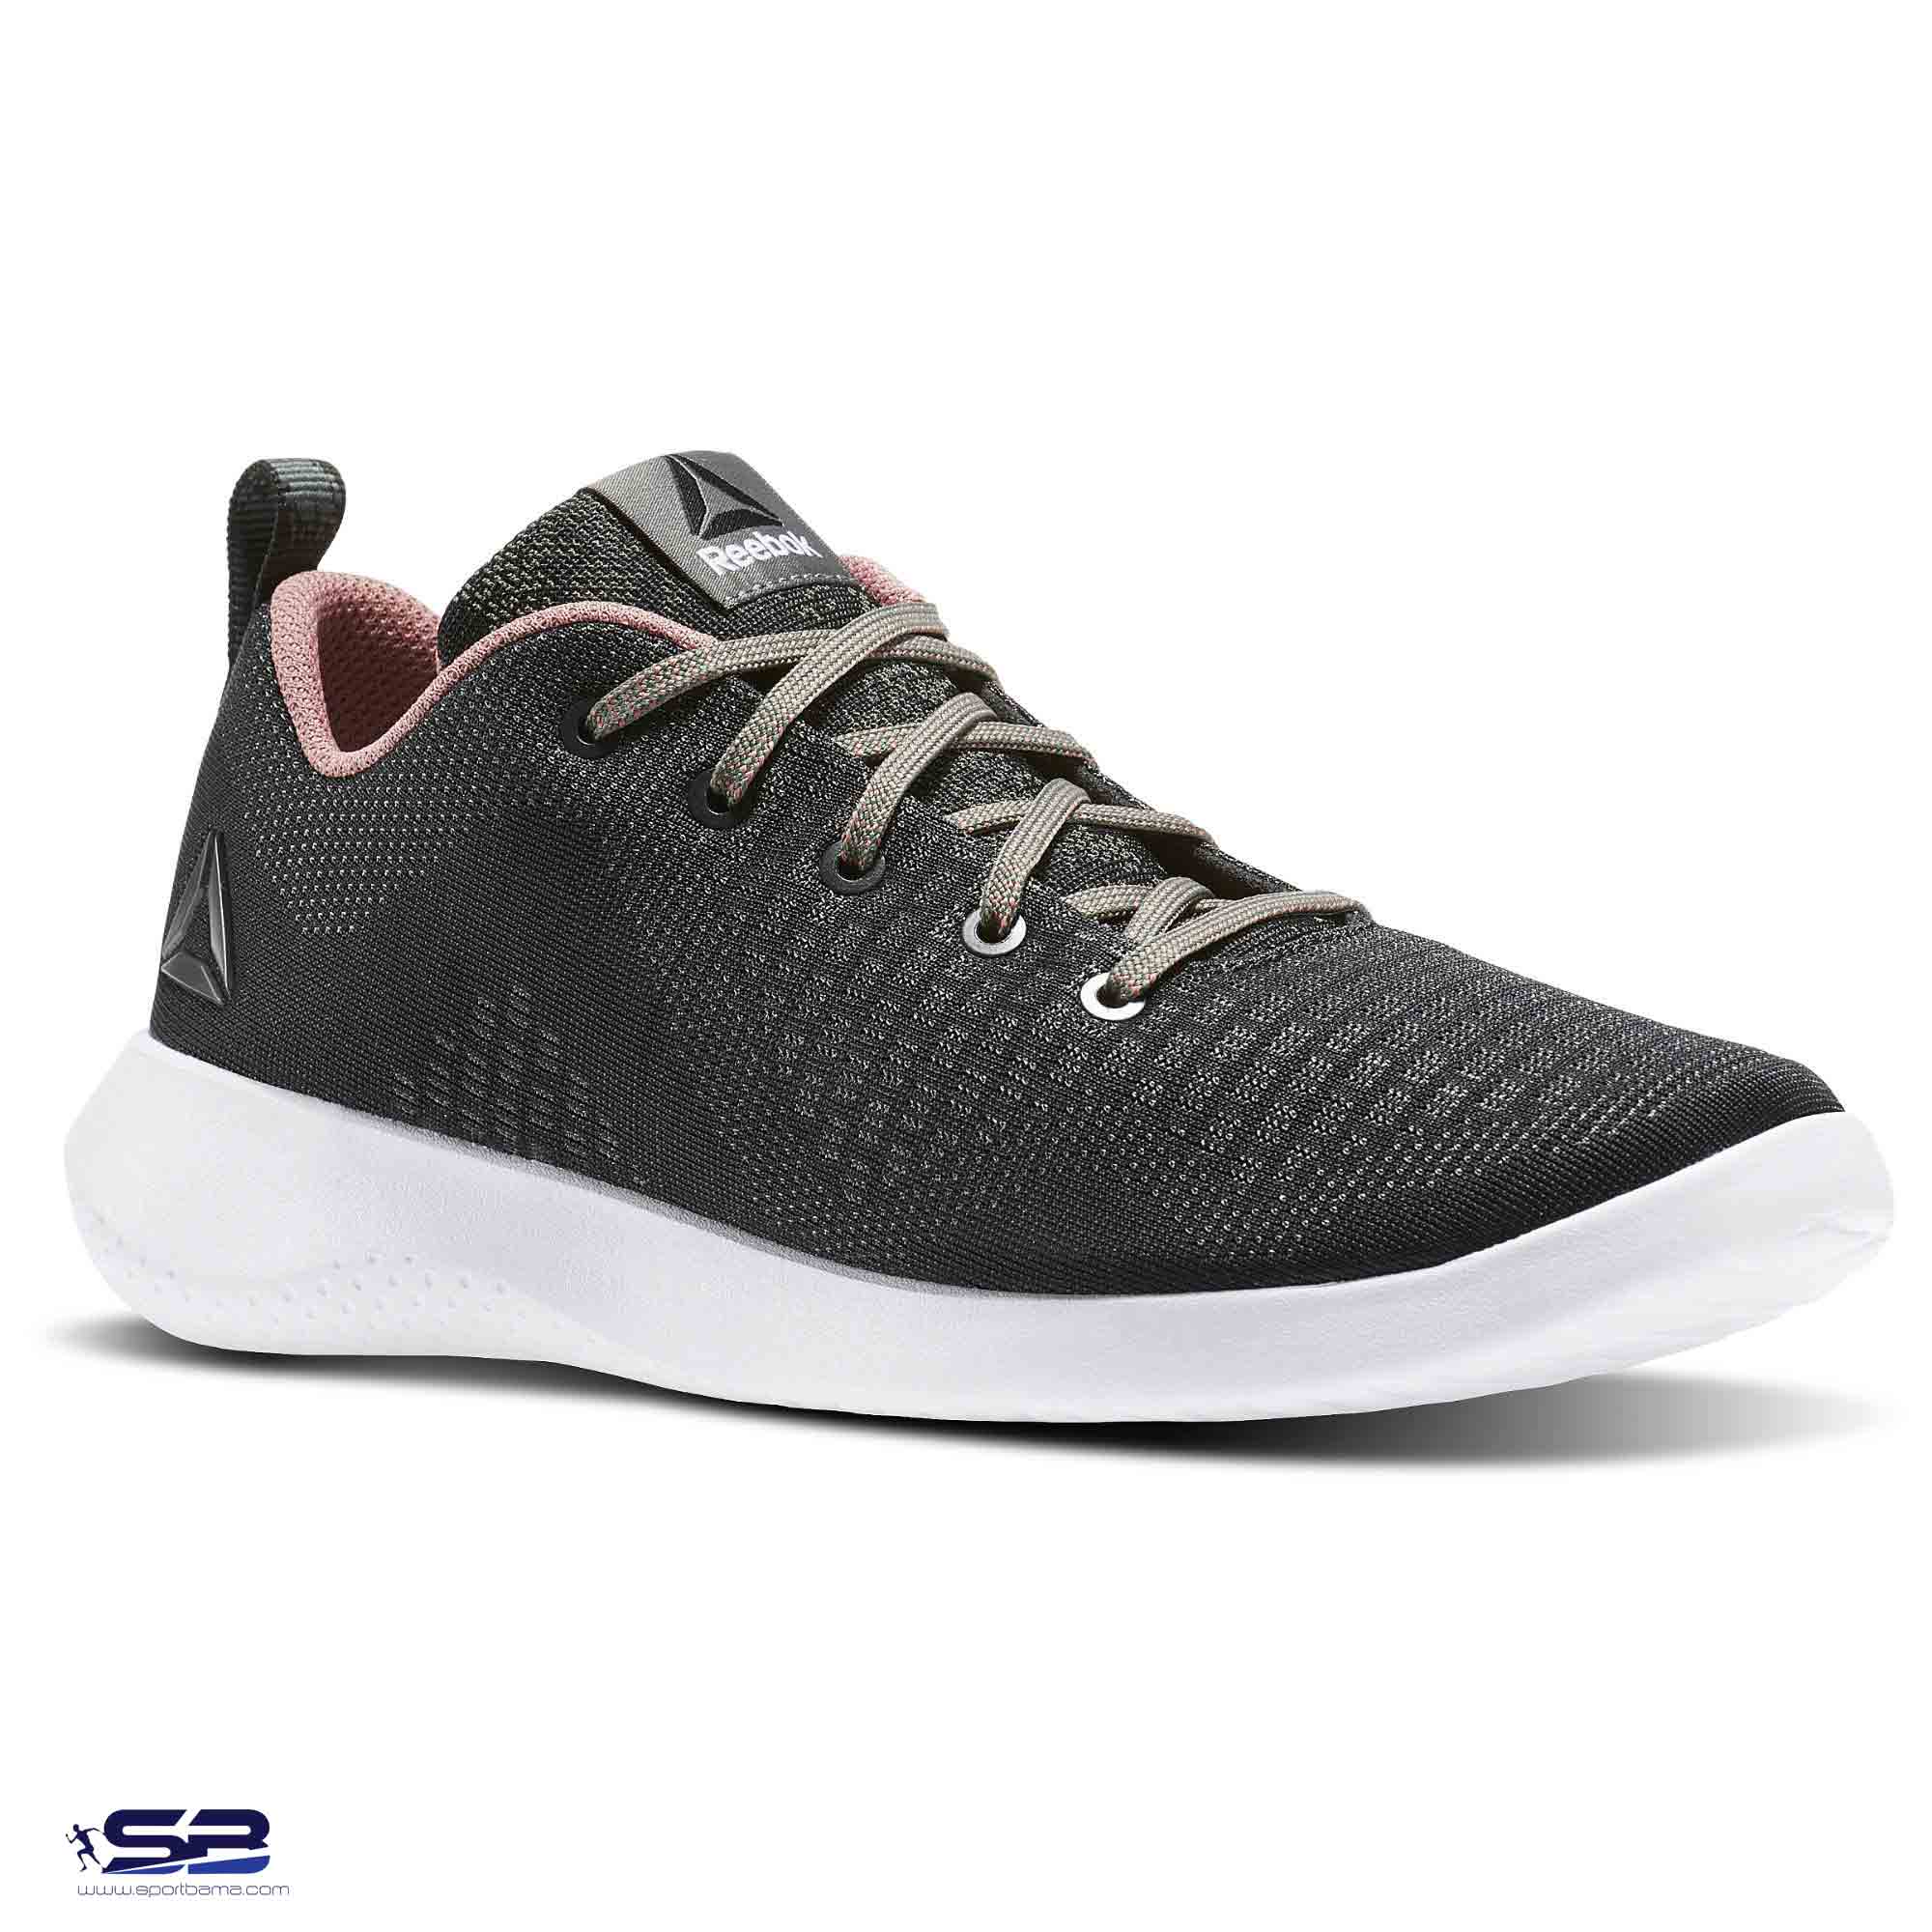  خرید  کفش کتانی اورجینال ریباک     Reebok Running Shoes BD5754  